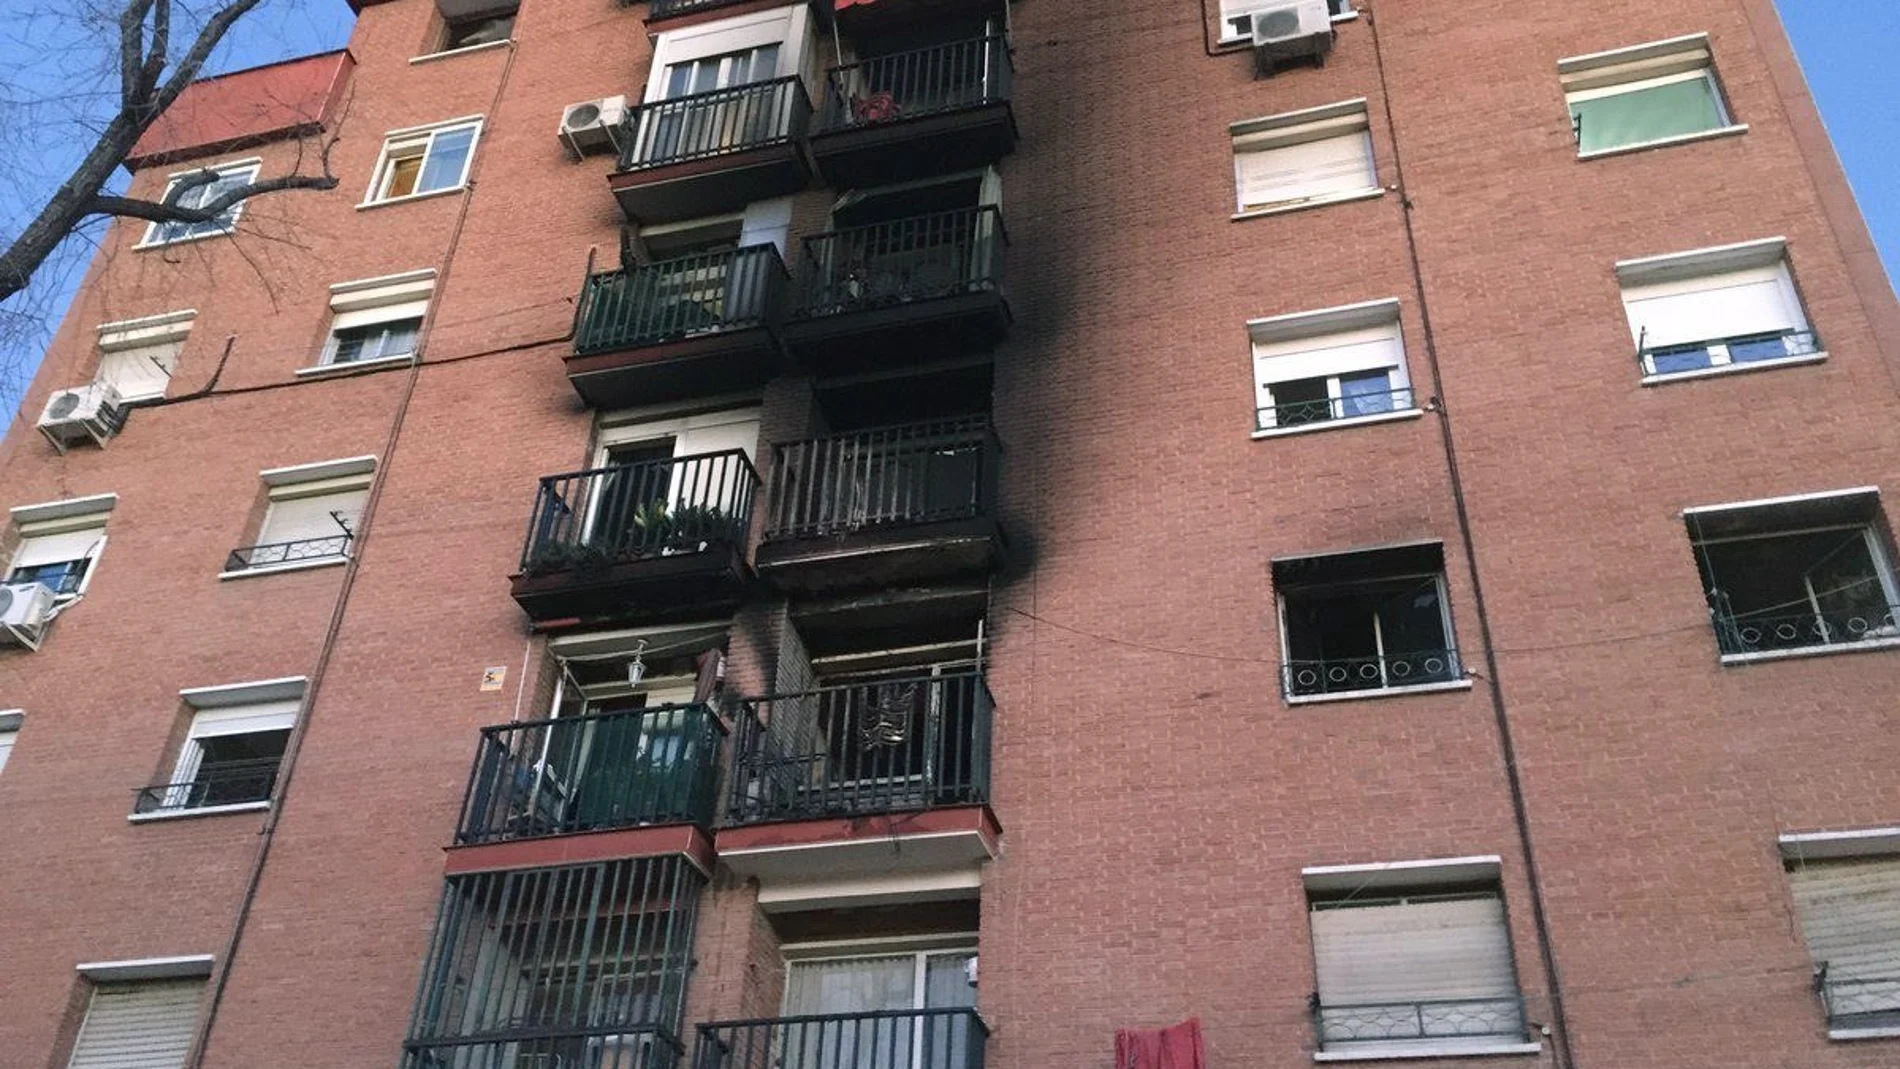 El incendio se originó en el tercer piso de una vivienda ubicada en la Ronda Sur en Puente de Vallecas